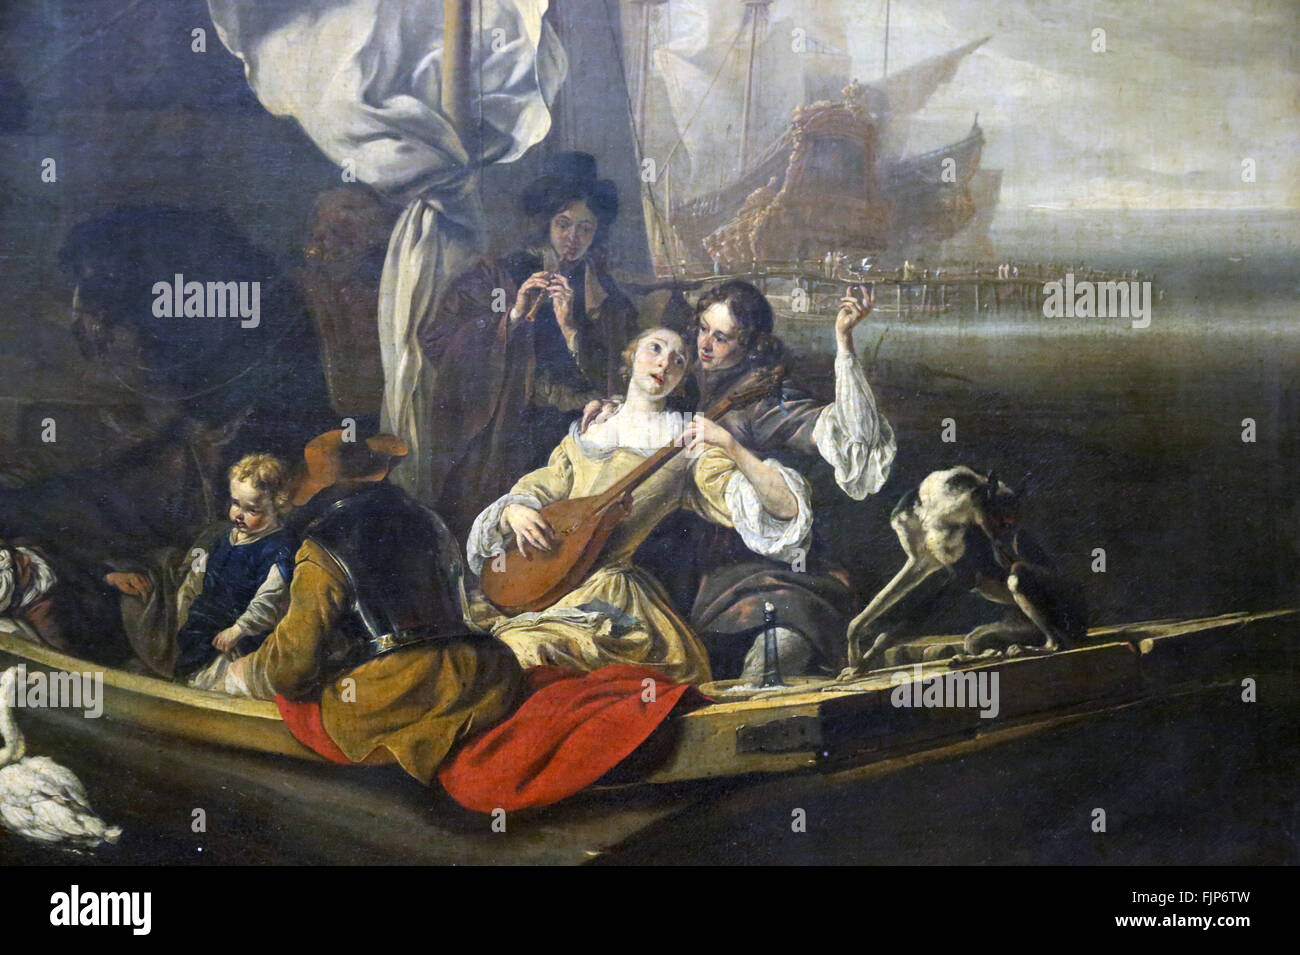 Jan Weenix (1640-1719). Peintre hollandais. Caractère de fantaisie dans un bateau, 1666. Musée du Louvre. Paris. La France. Banque D'Images